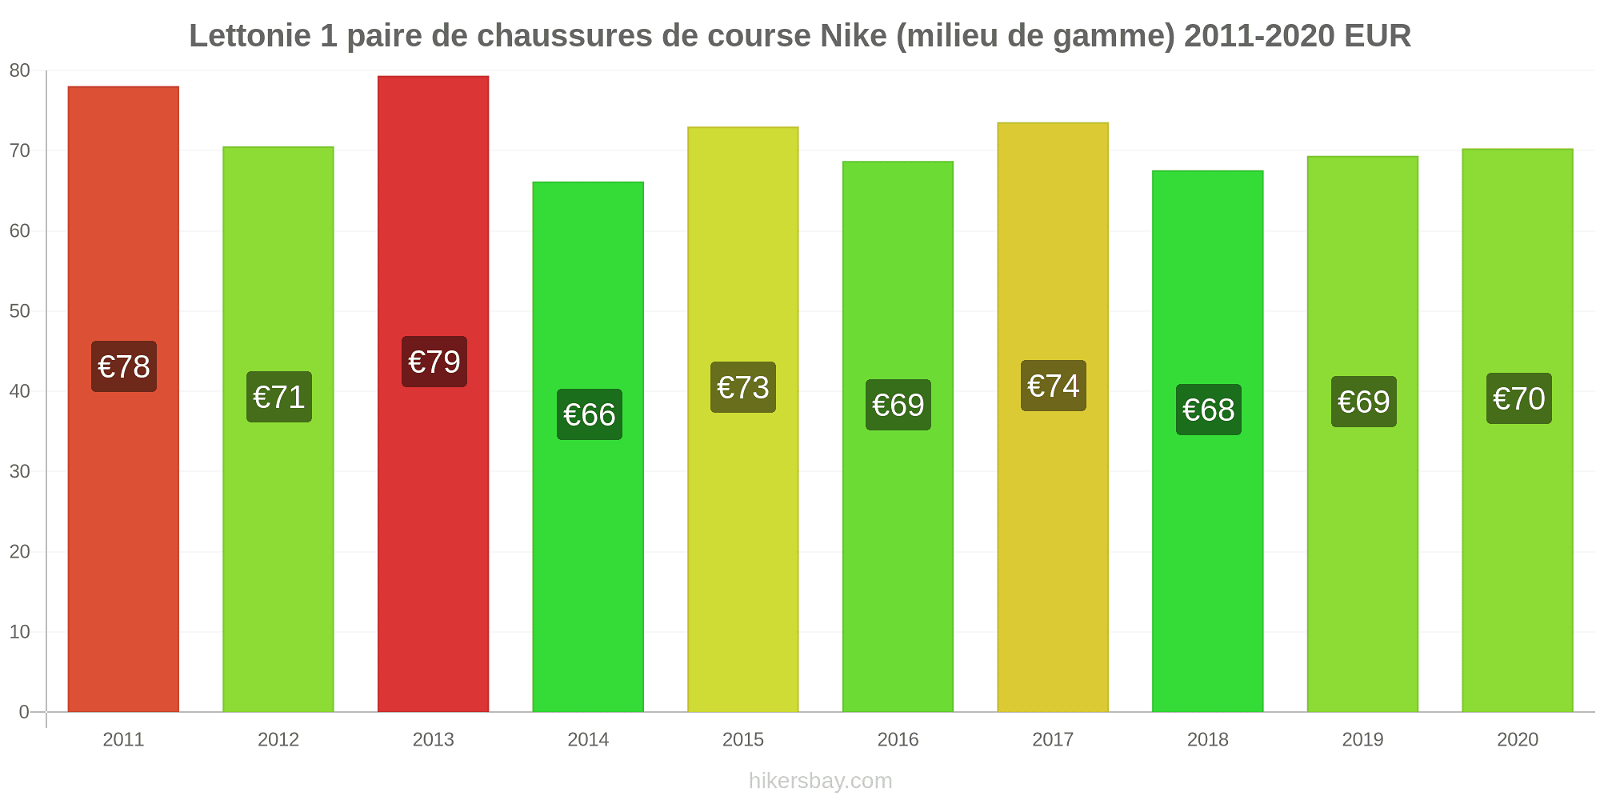 Lettonie changements de prix 1 paire de chaussures de course Nike (milieu de gamme) hikersbay.com